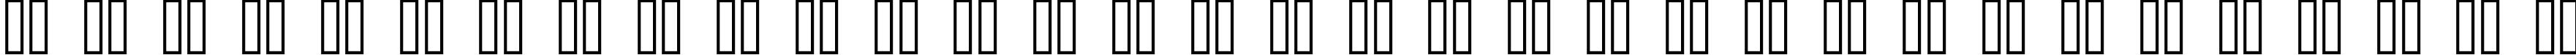 Пример написания русского алфавита шрифтом standard 07_52